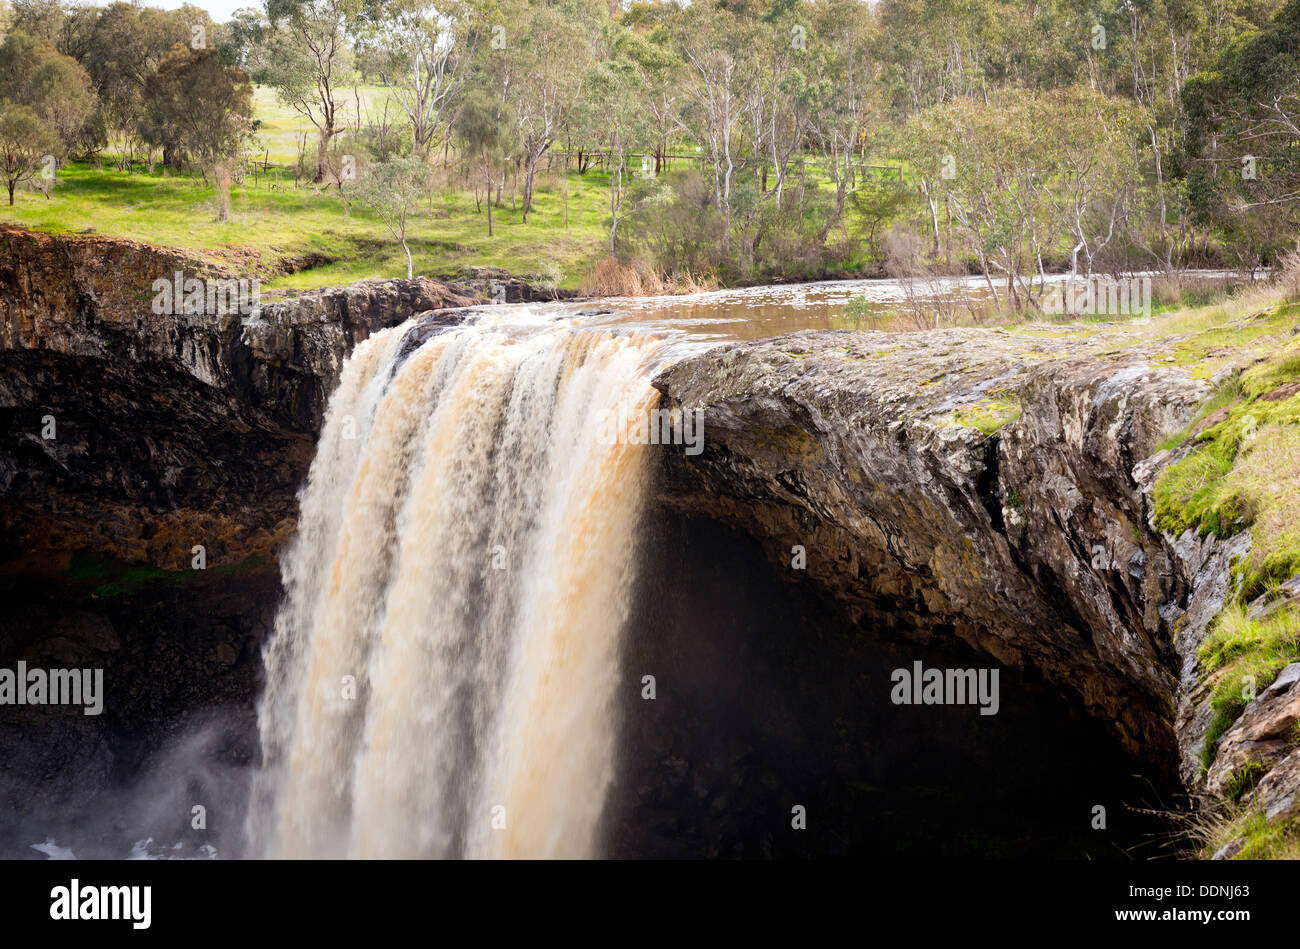 De superbes chutes d'eau de Wannon dans la région des Grampians de Victoria, Australie Banque D'Images